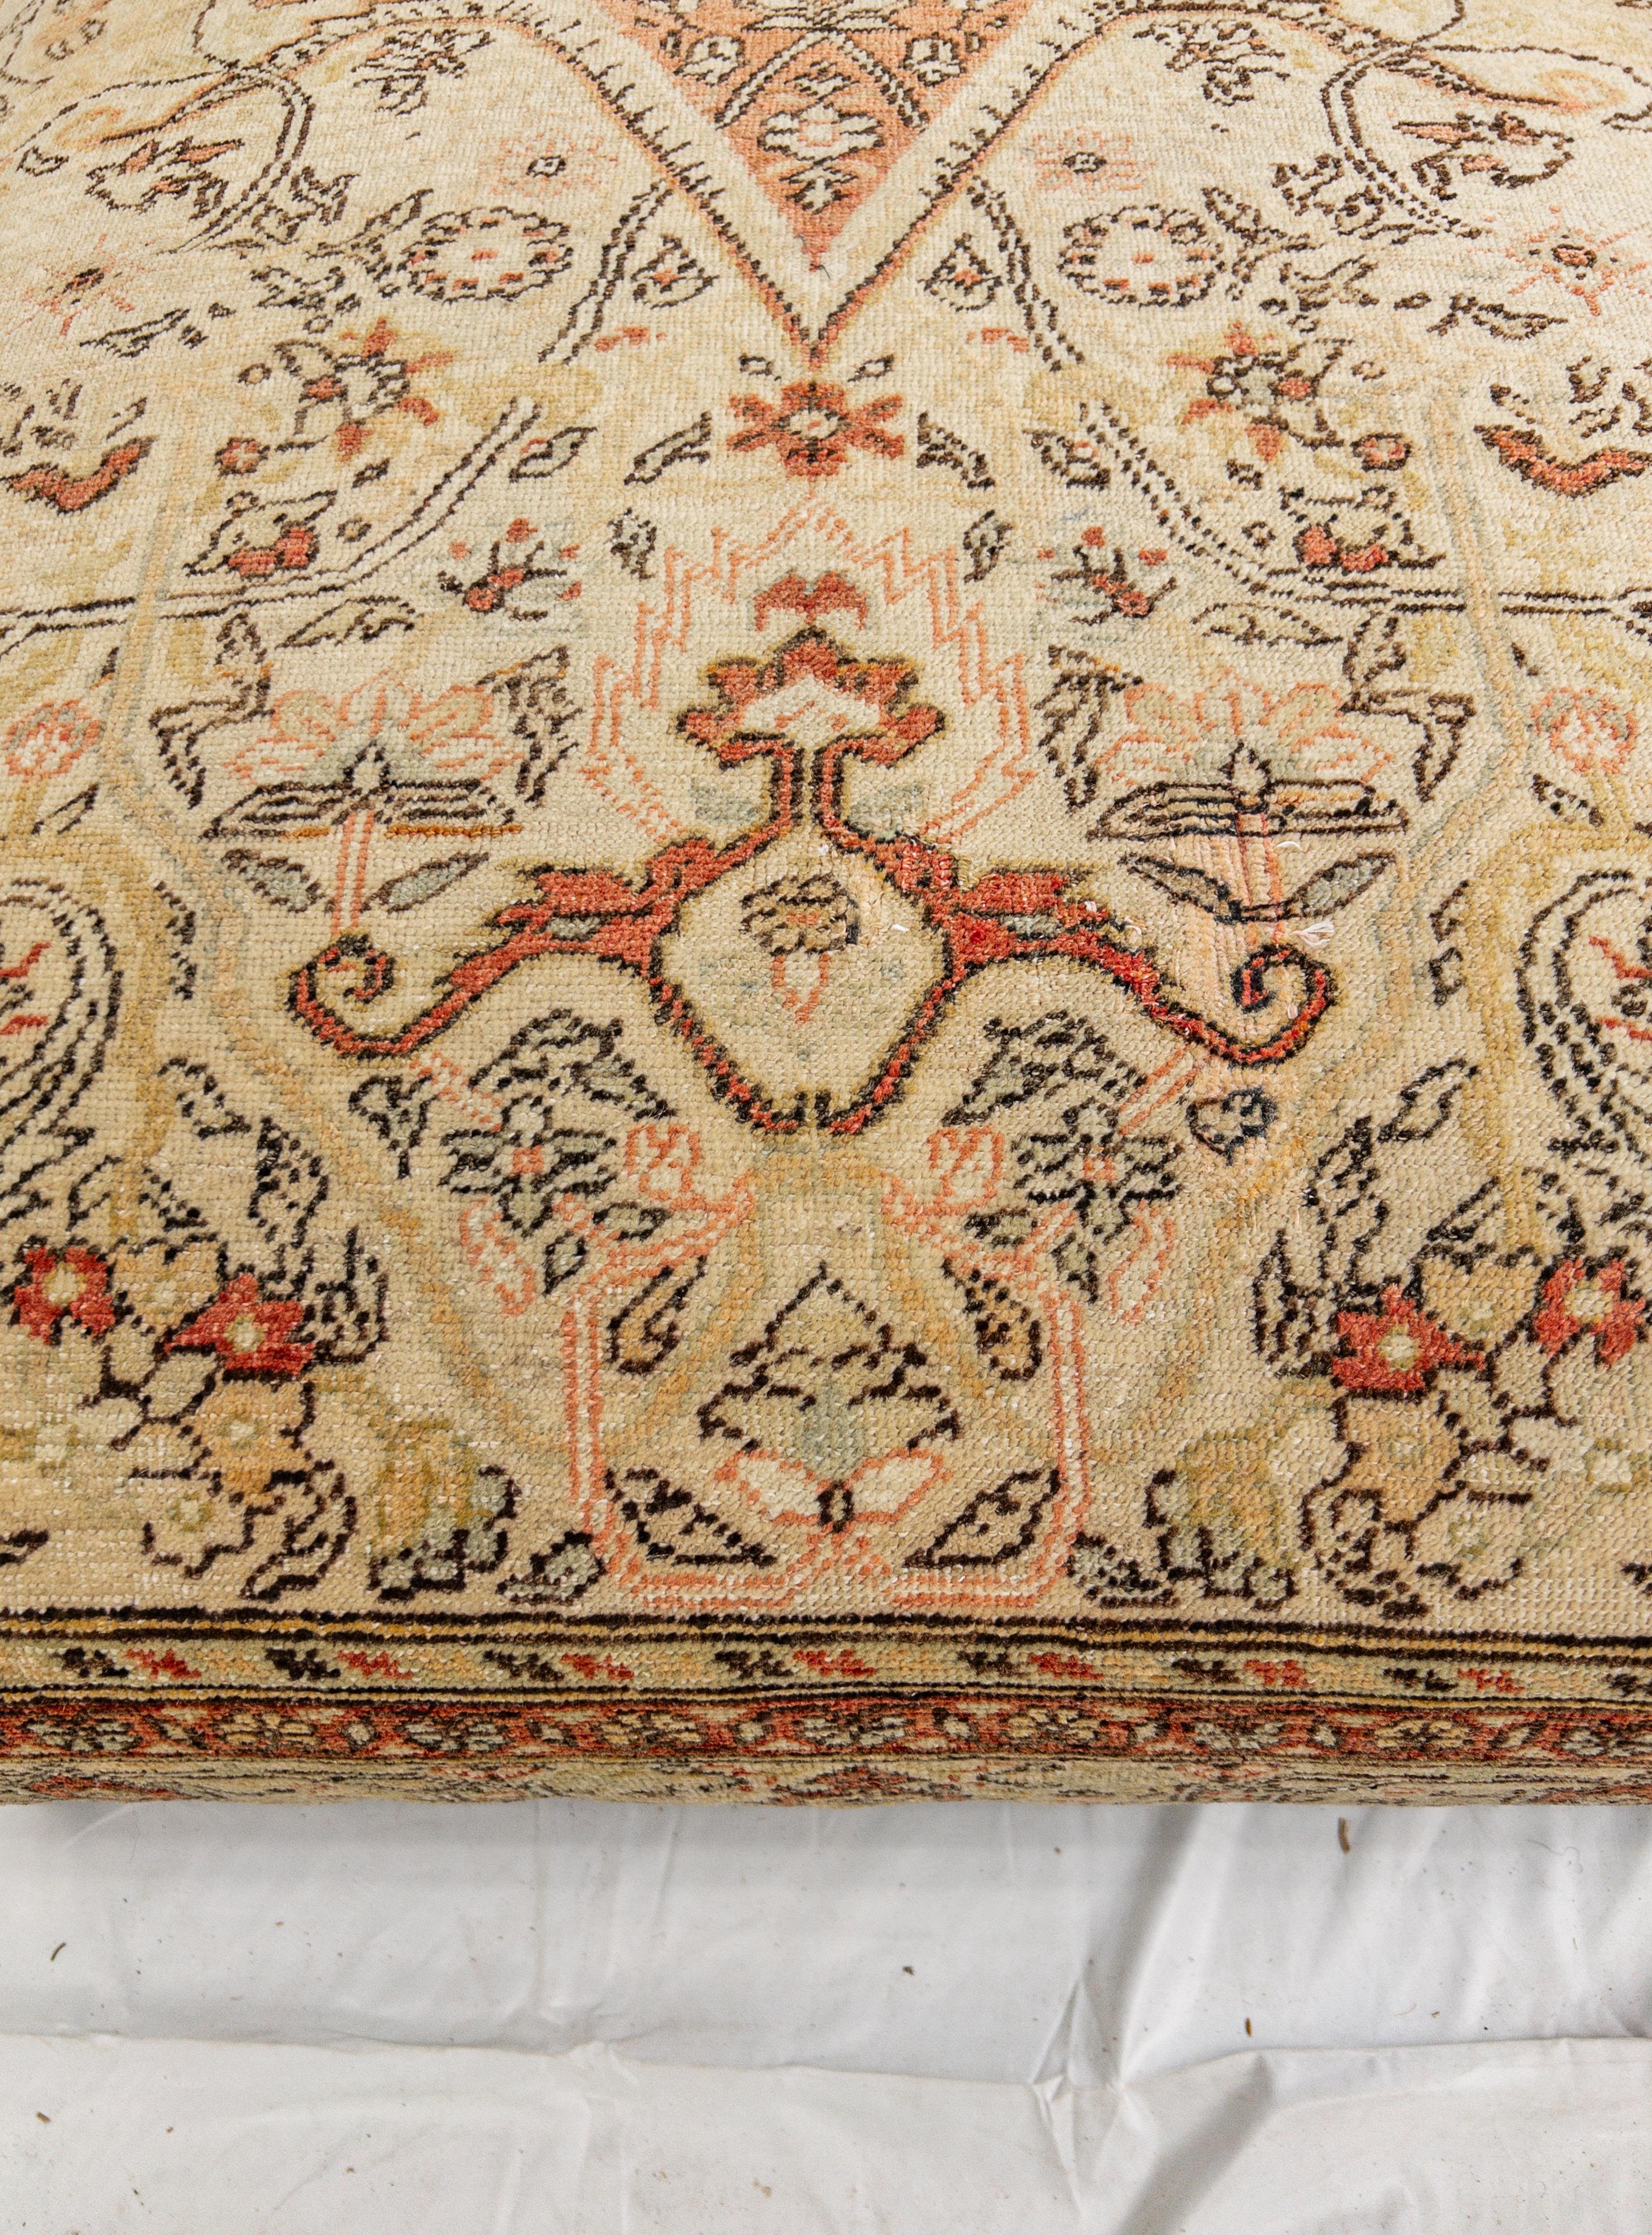 European Vintage Carpet Ottoman For Sale